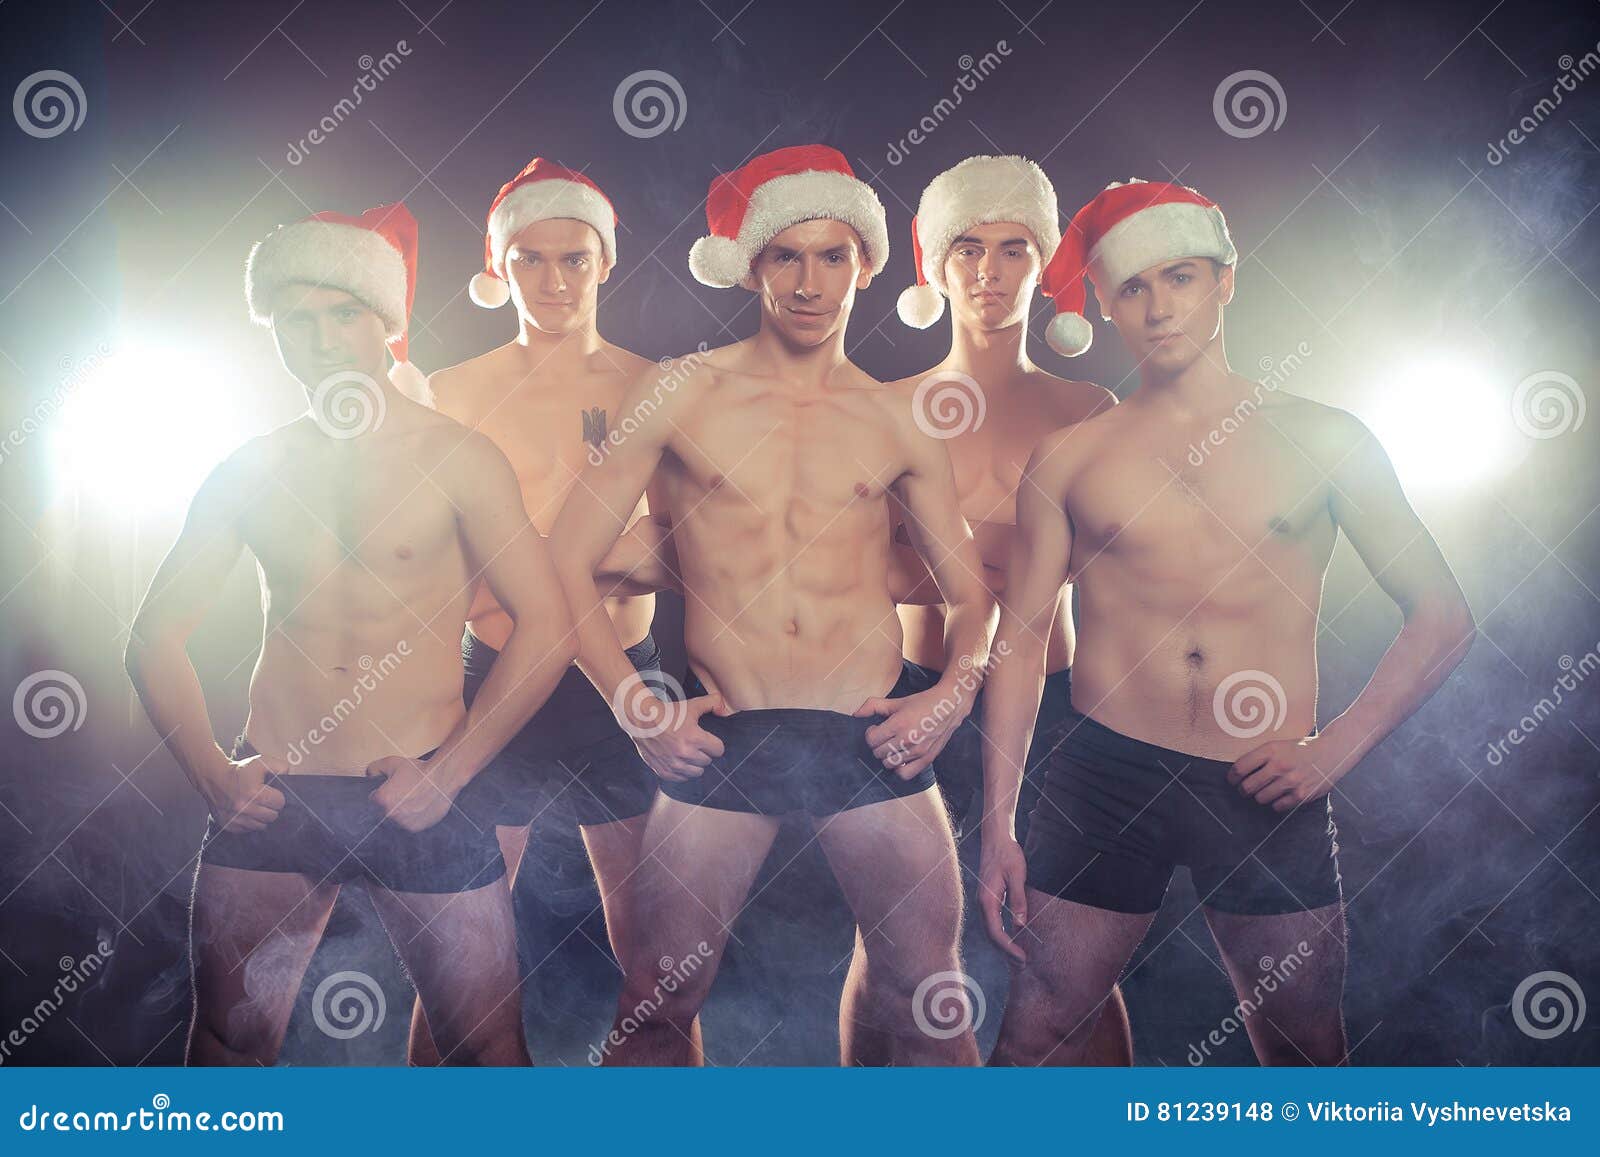 Immagini Natale Uomini.Uomini Muscolari Sexy Nella Forma Di Santa Nuovo Anno Di Natale Fotografia Stock Immagine Di Bodybuilding Maschio 81239148